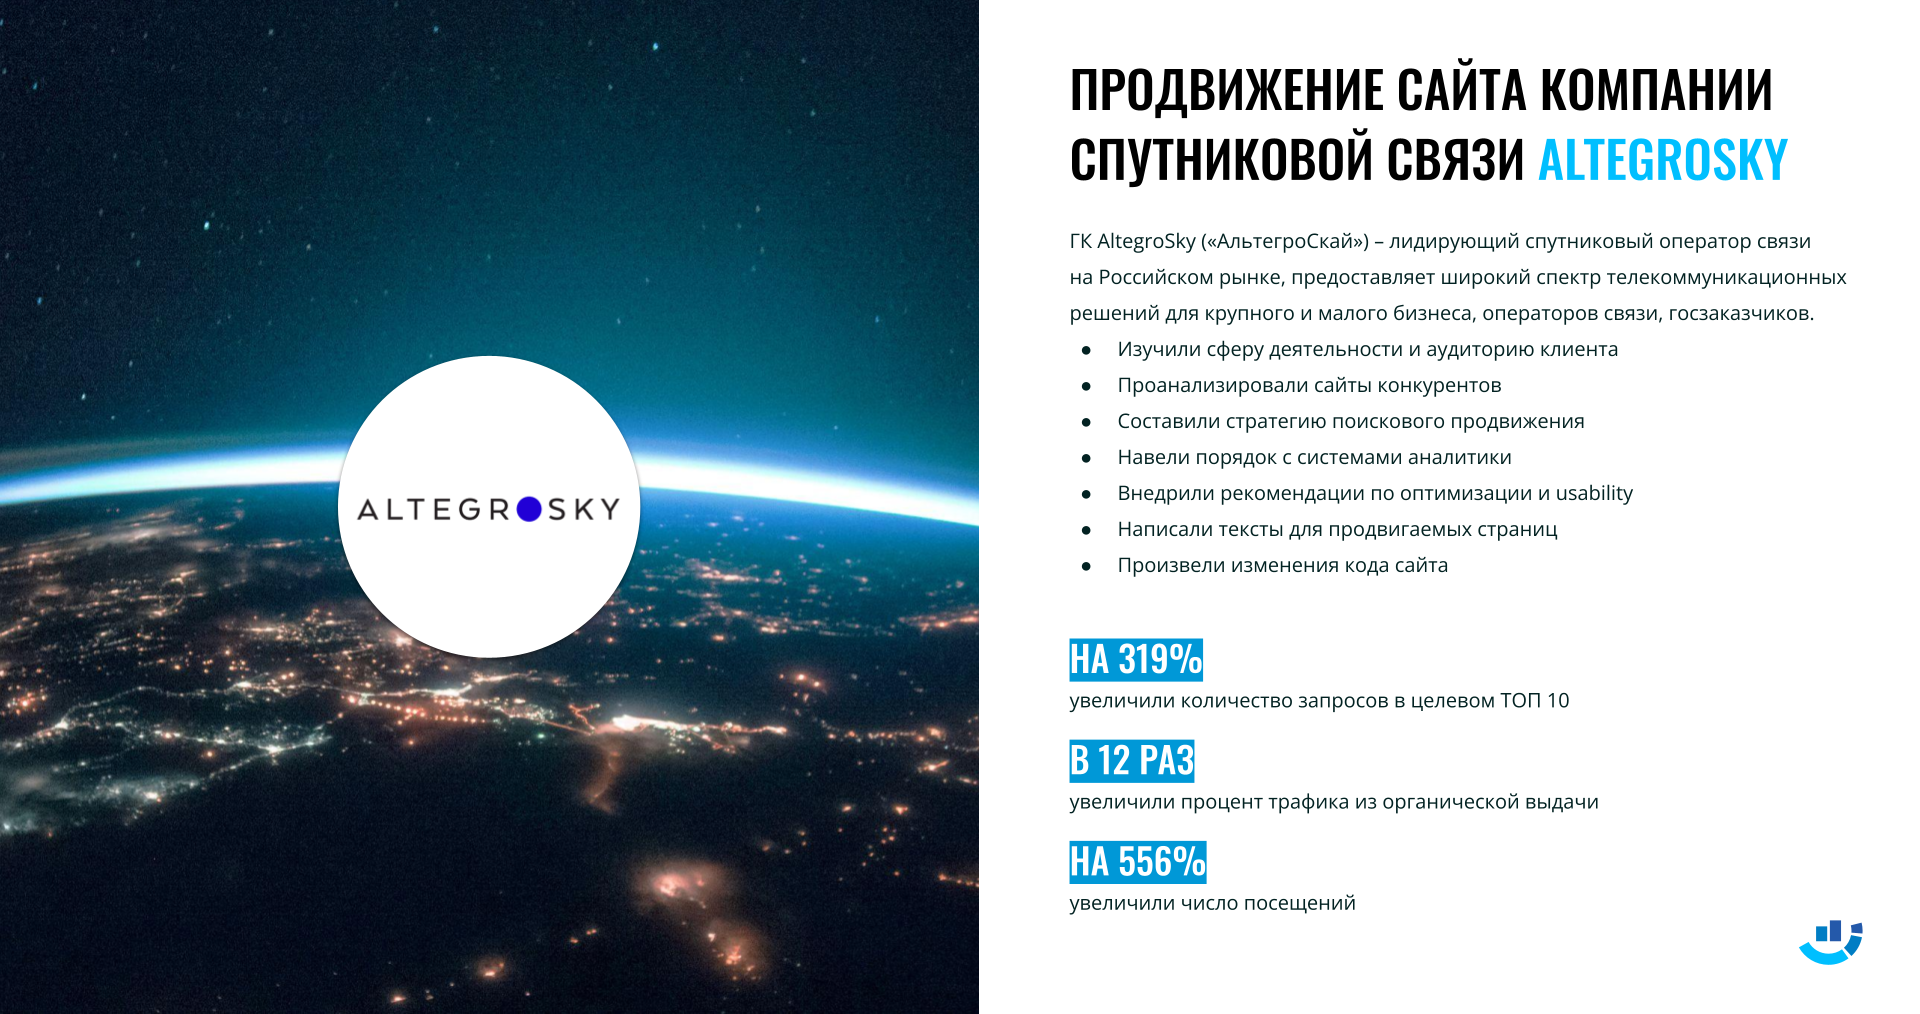 [Кейс] Космос и спутники. На 556% увеличили число посещений сайта. Продвижение сайта компании спутниковой связи Altegrosky | Altegrosky, интернет-реклама, кейс, оператор связи, продвижение сайта